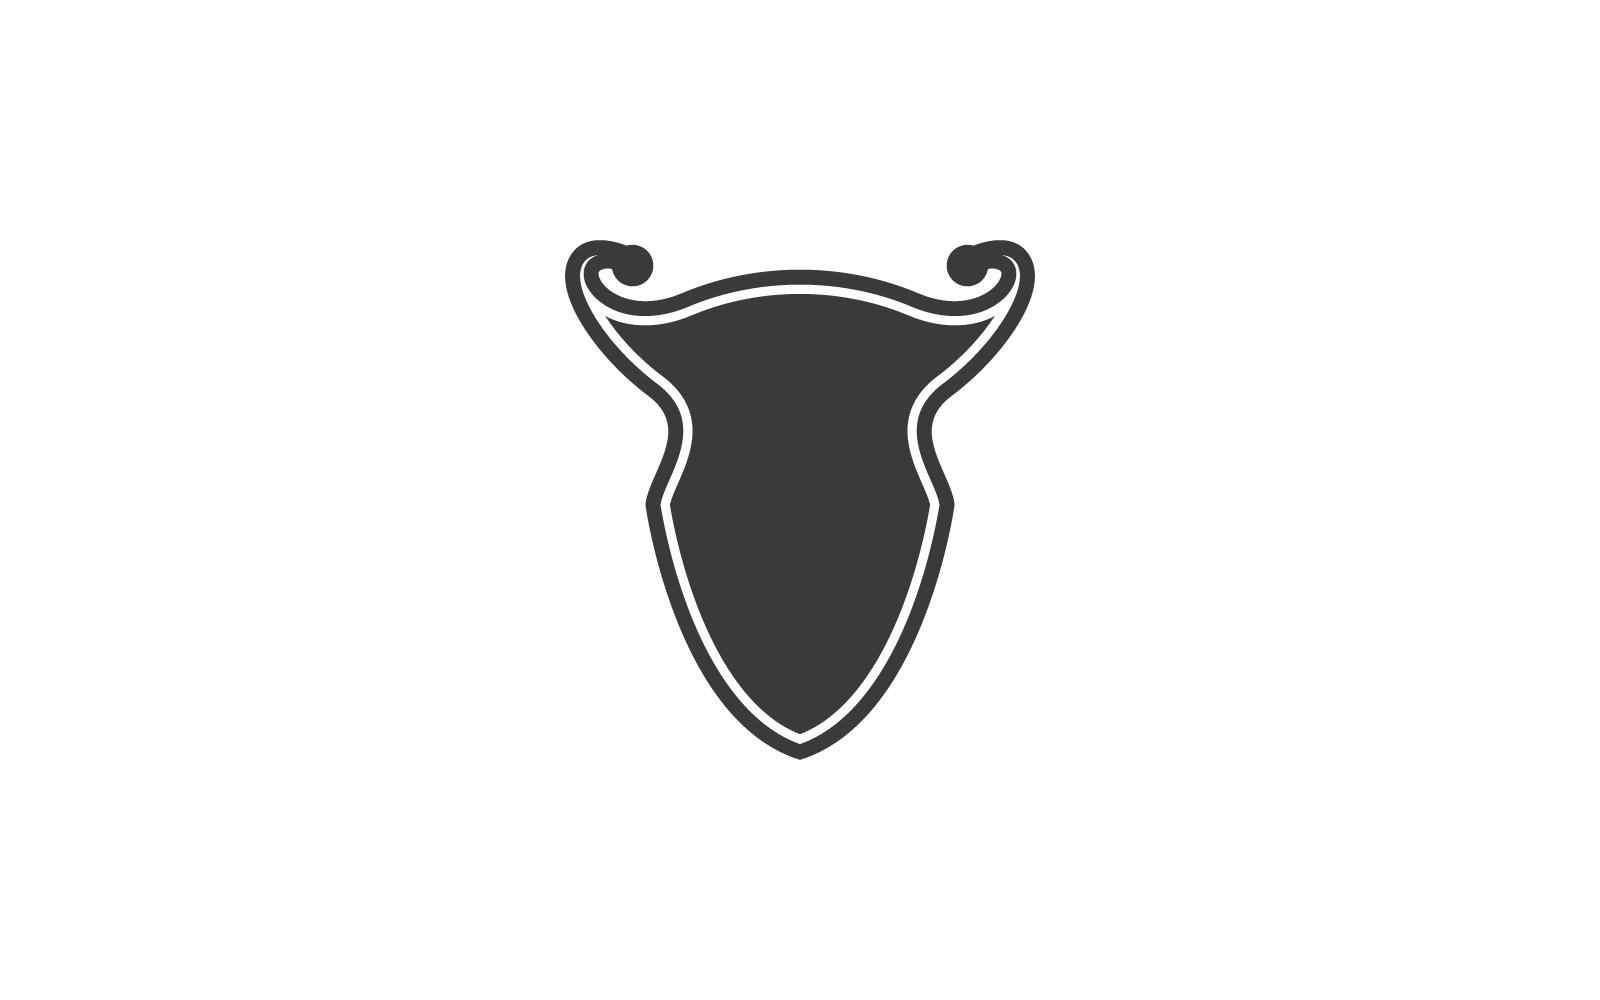 Shield illustration logo vector design